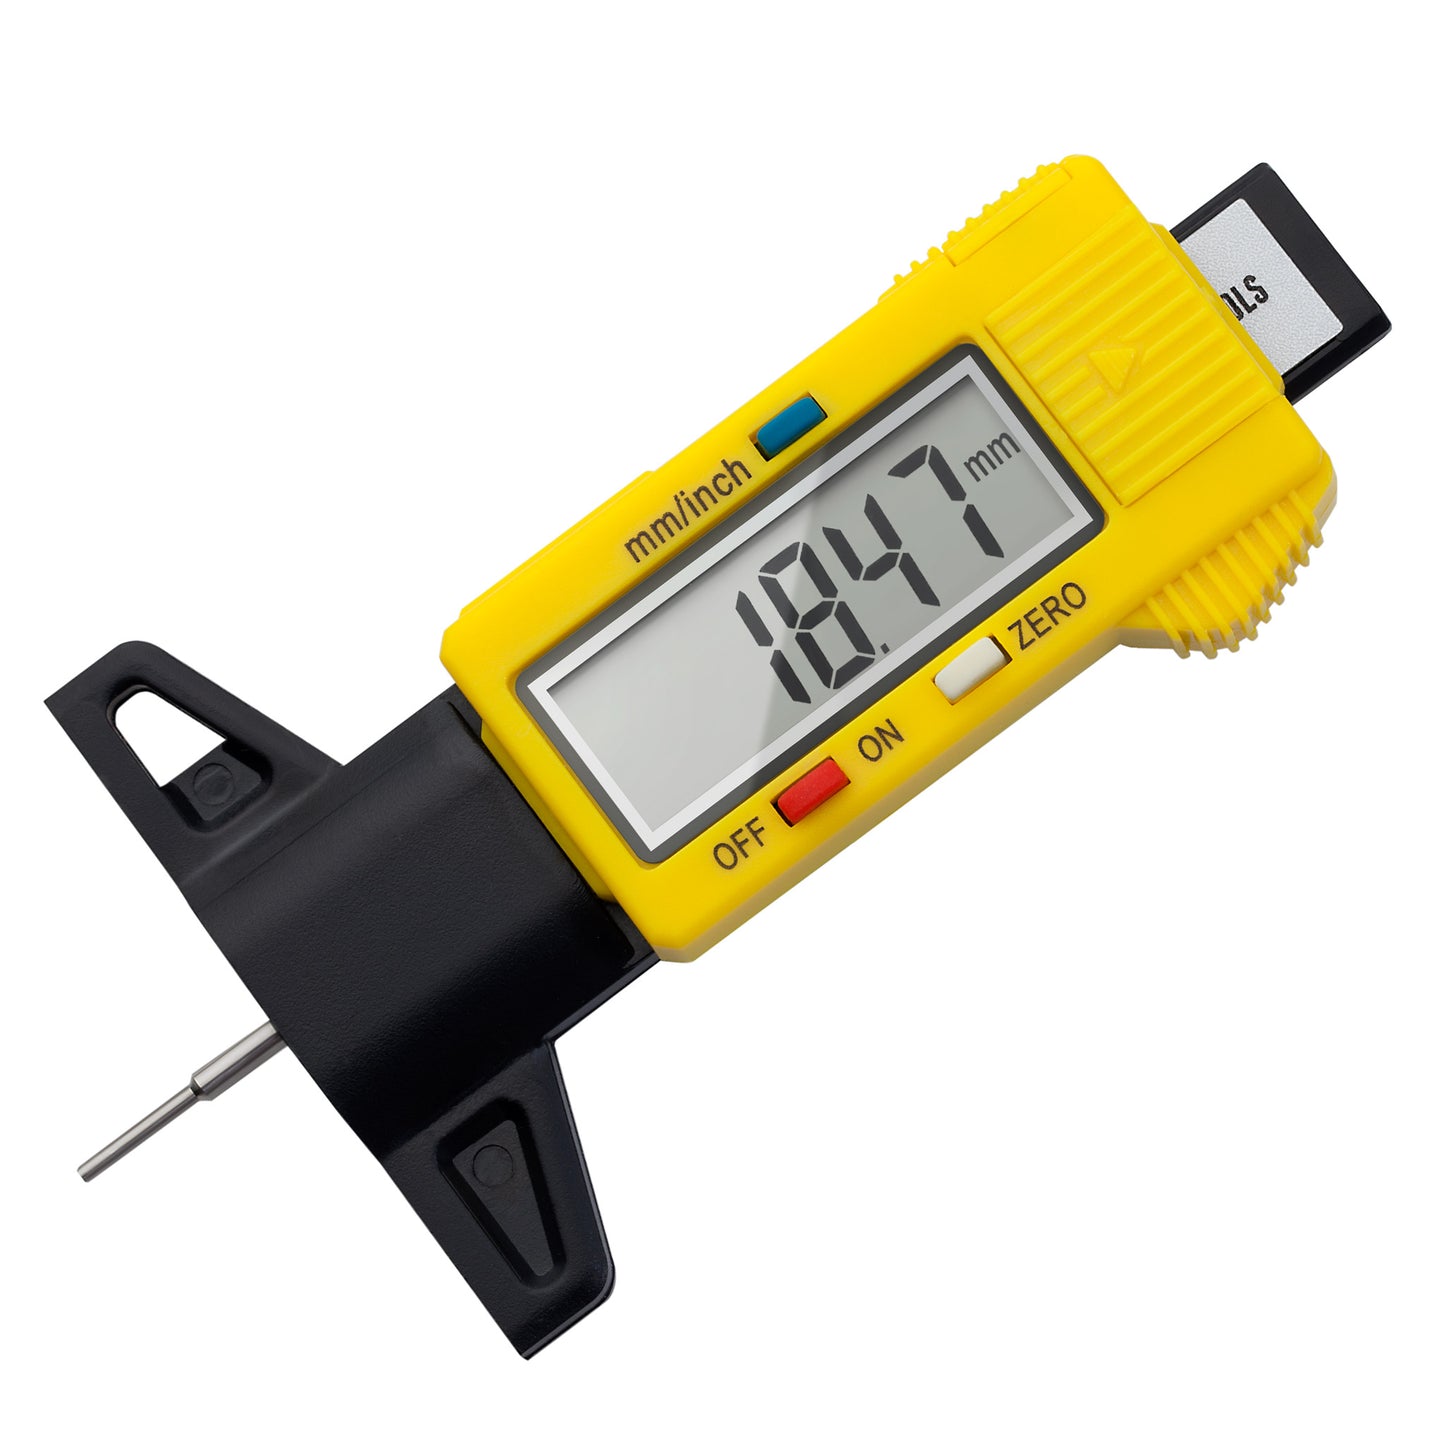 Segomo Tools Herramienta de medición del medidor de profundidad de la banda de rodadura del neumático digital LCD con conversión de milímetros y pulgadas (0-26 mm/0-1 pulgada) - DTTDG01